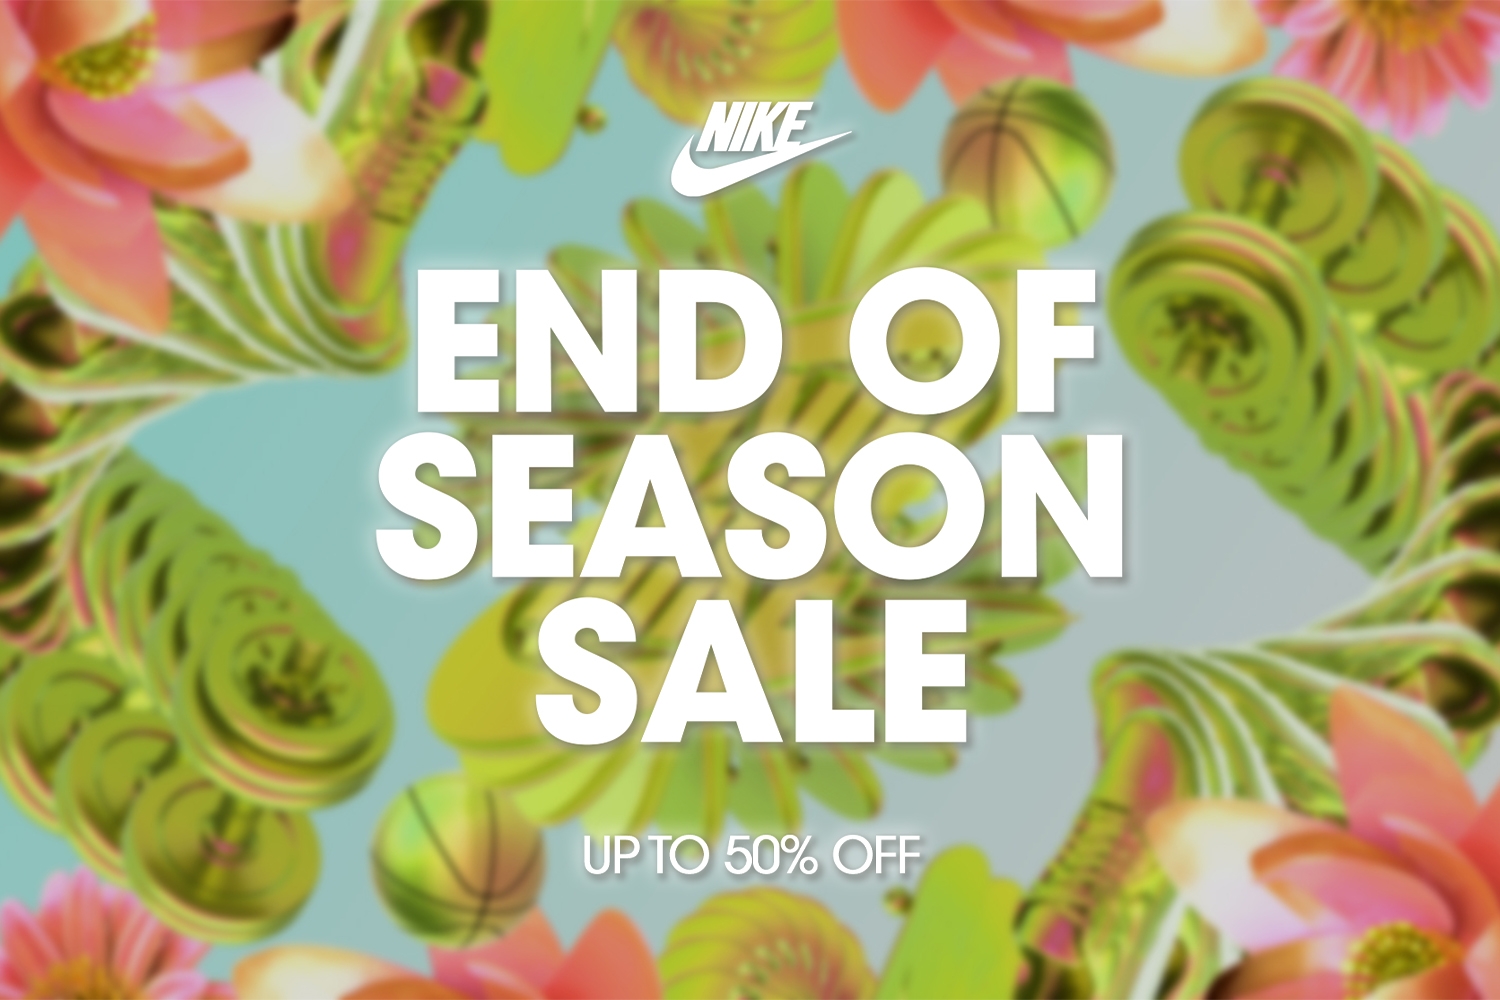 De Nike End of Season Sale is live